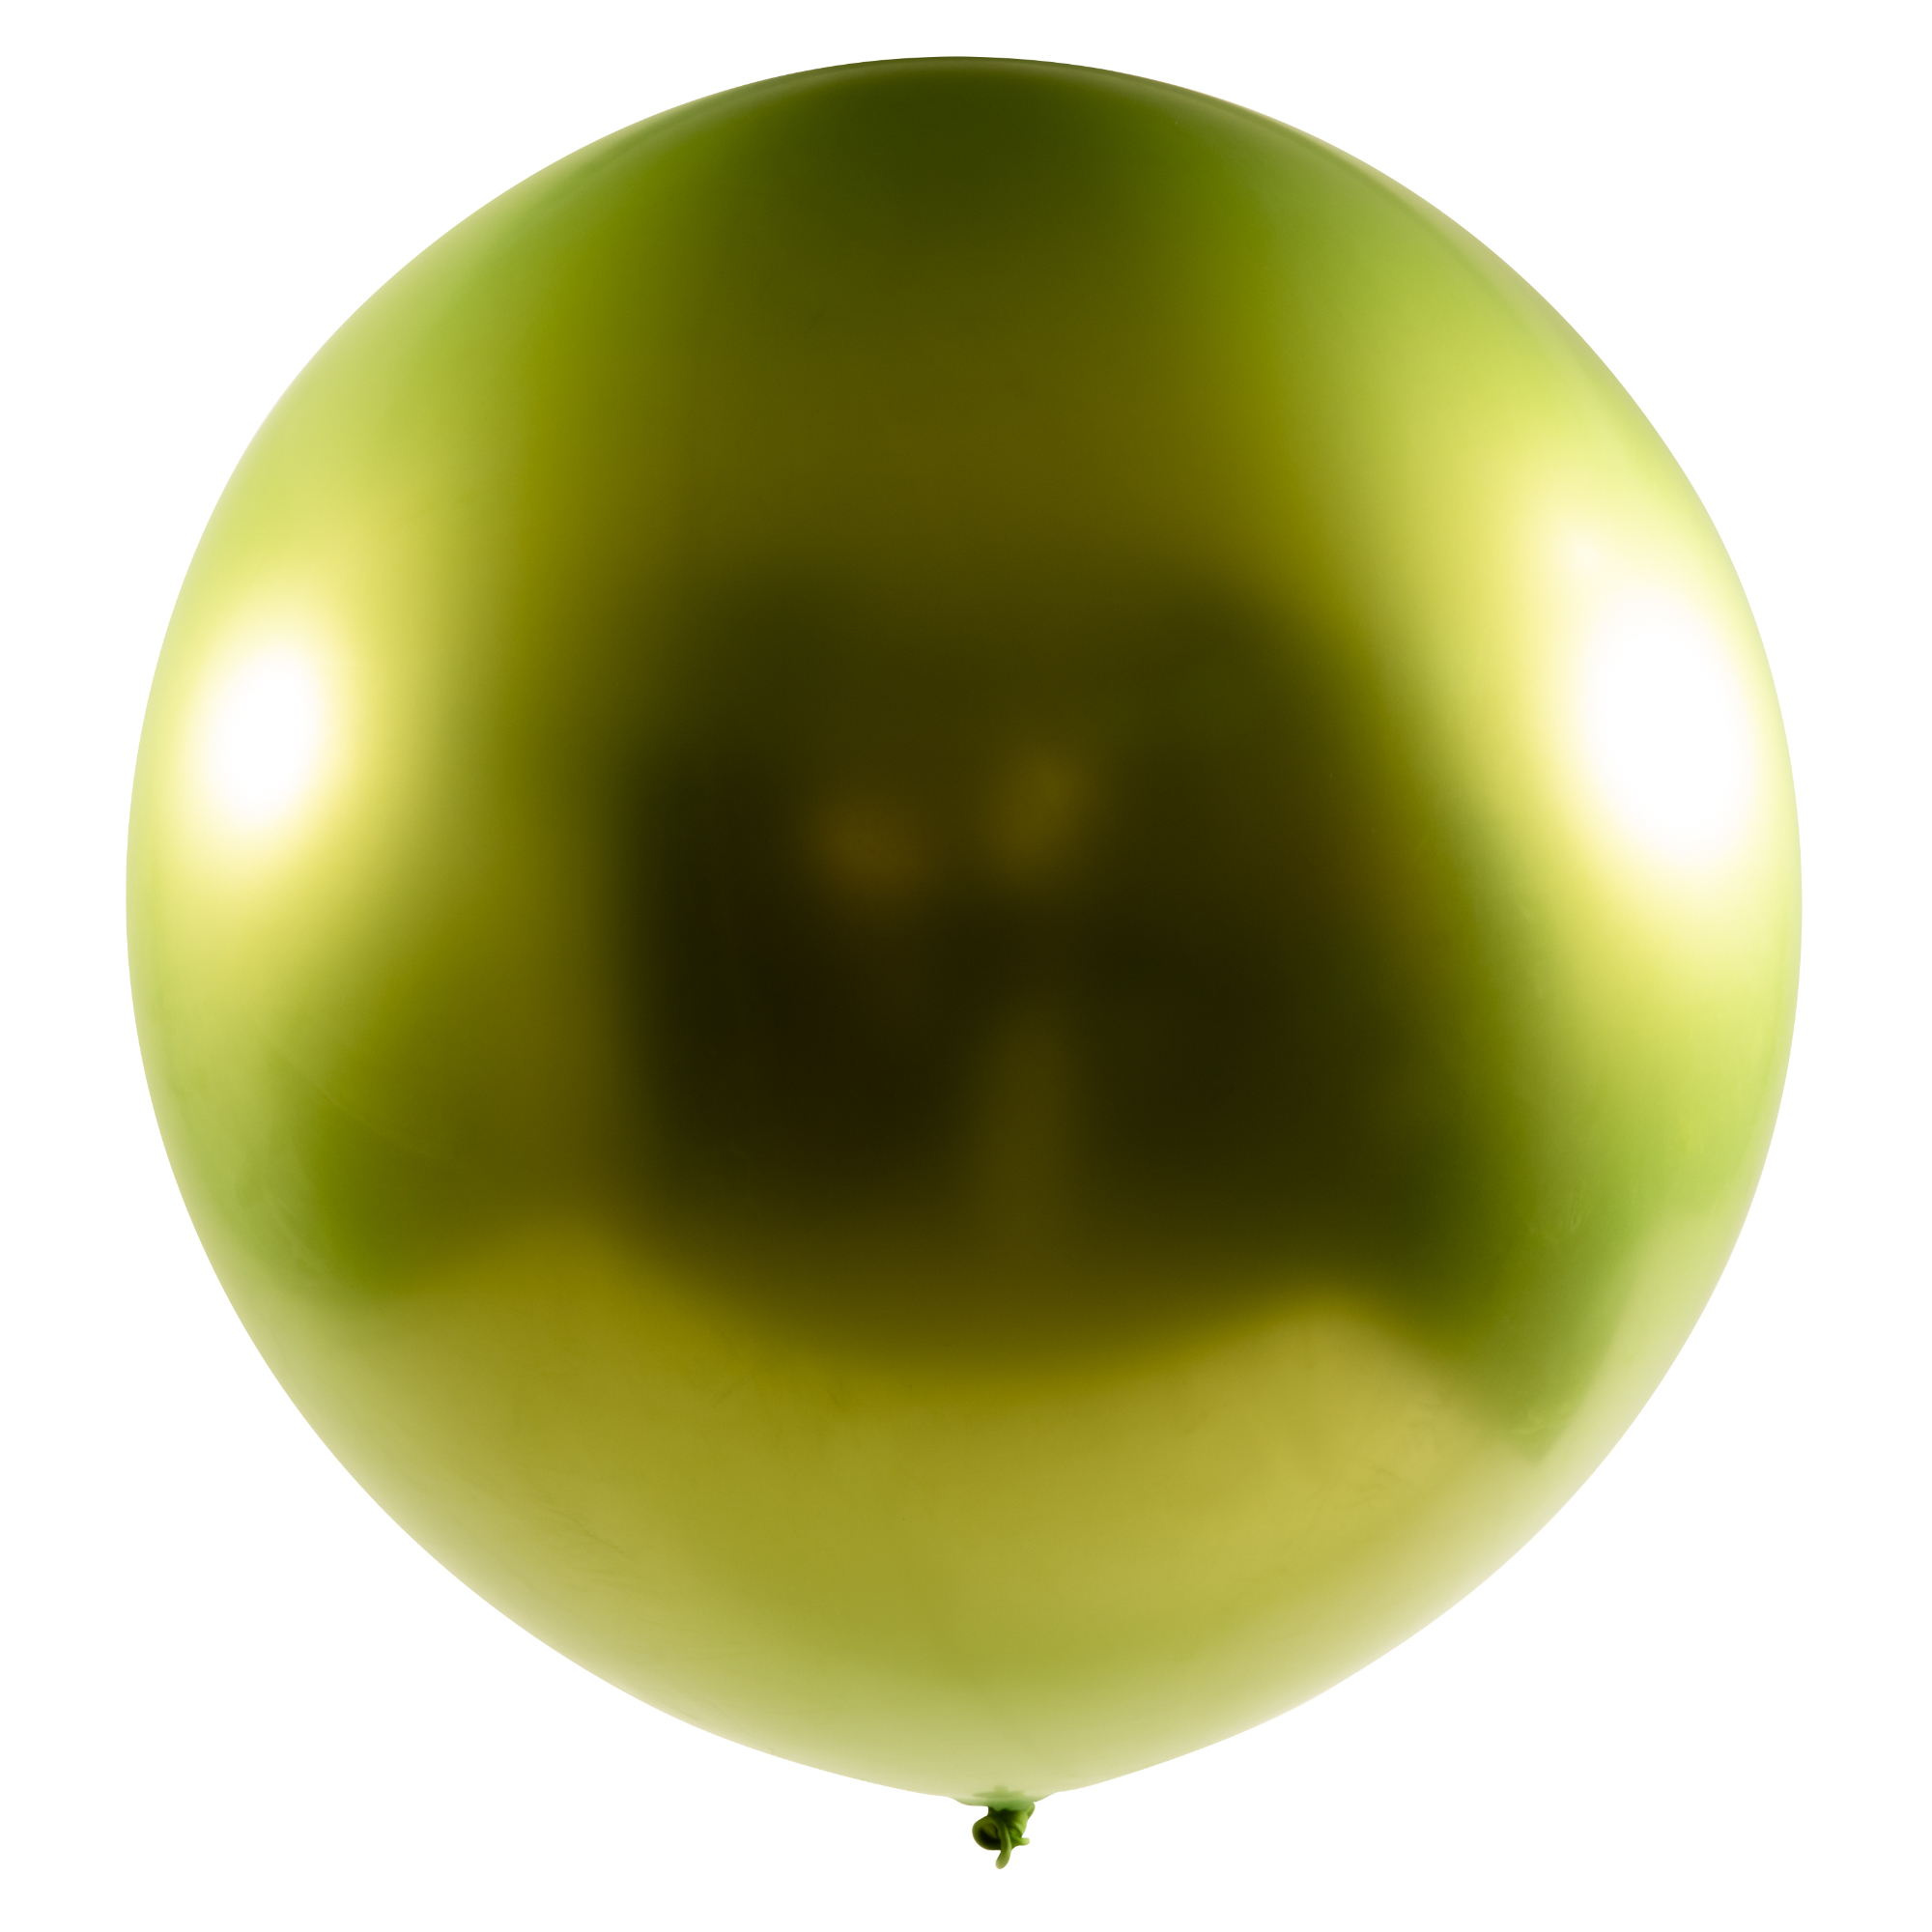 Chrome Latex Balloon 36" 2pc/bag - Apple Green